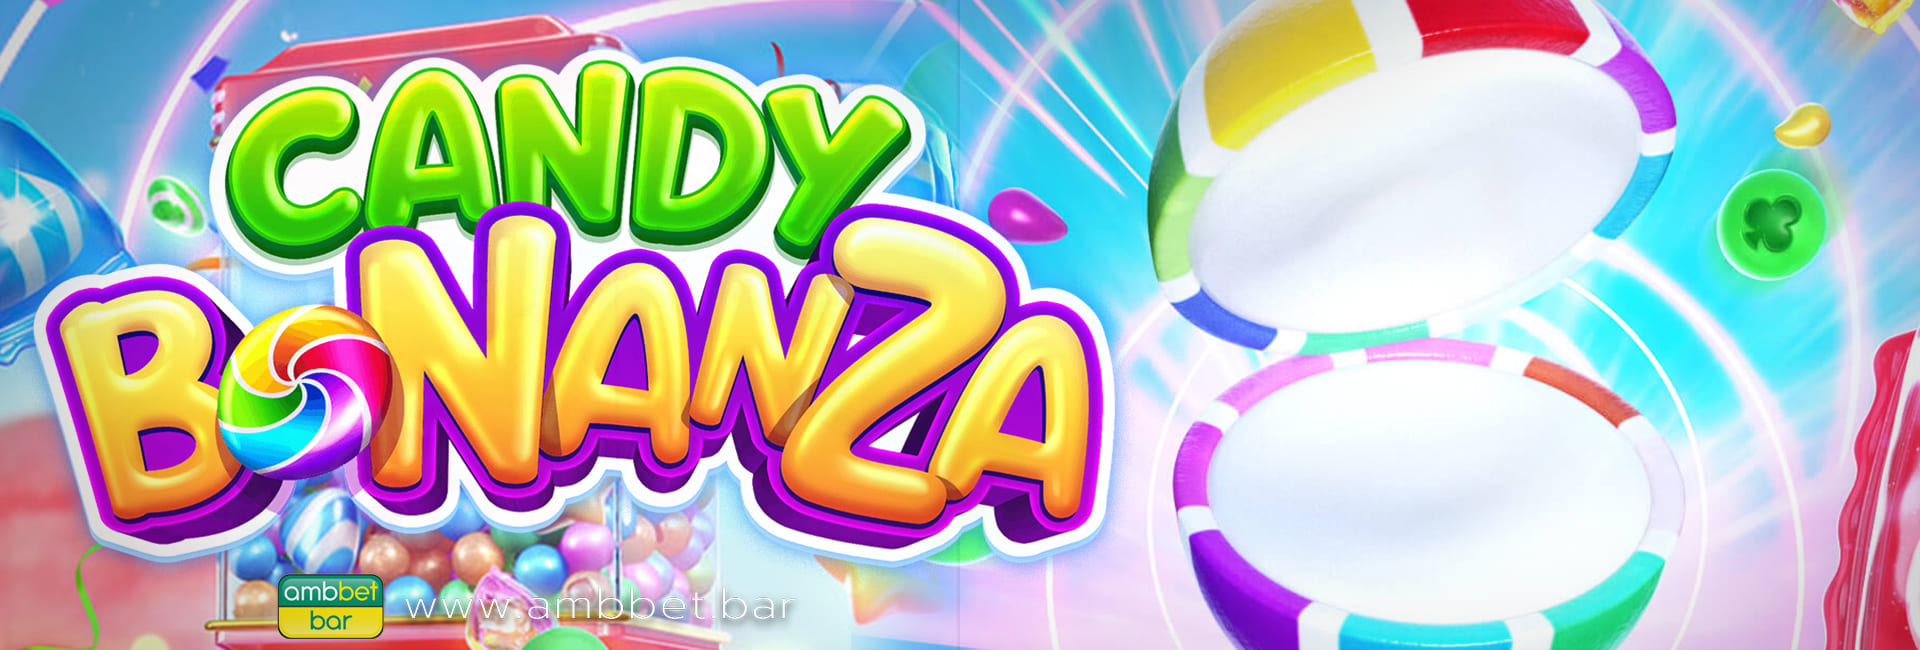 Candy Bonanza banner